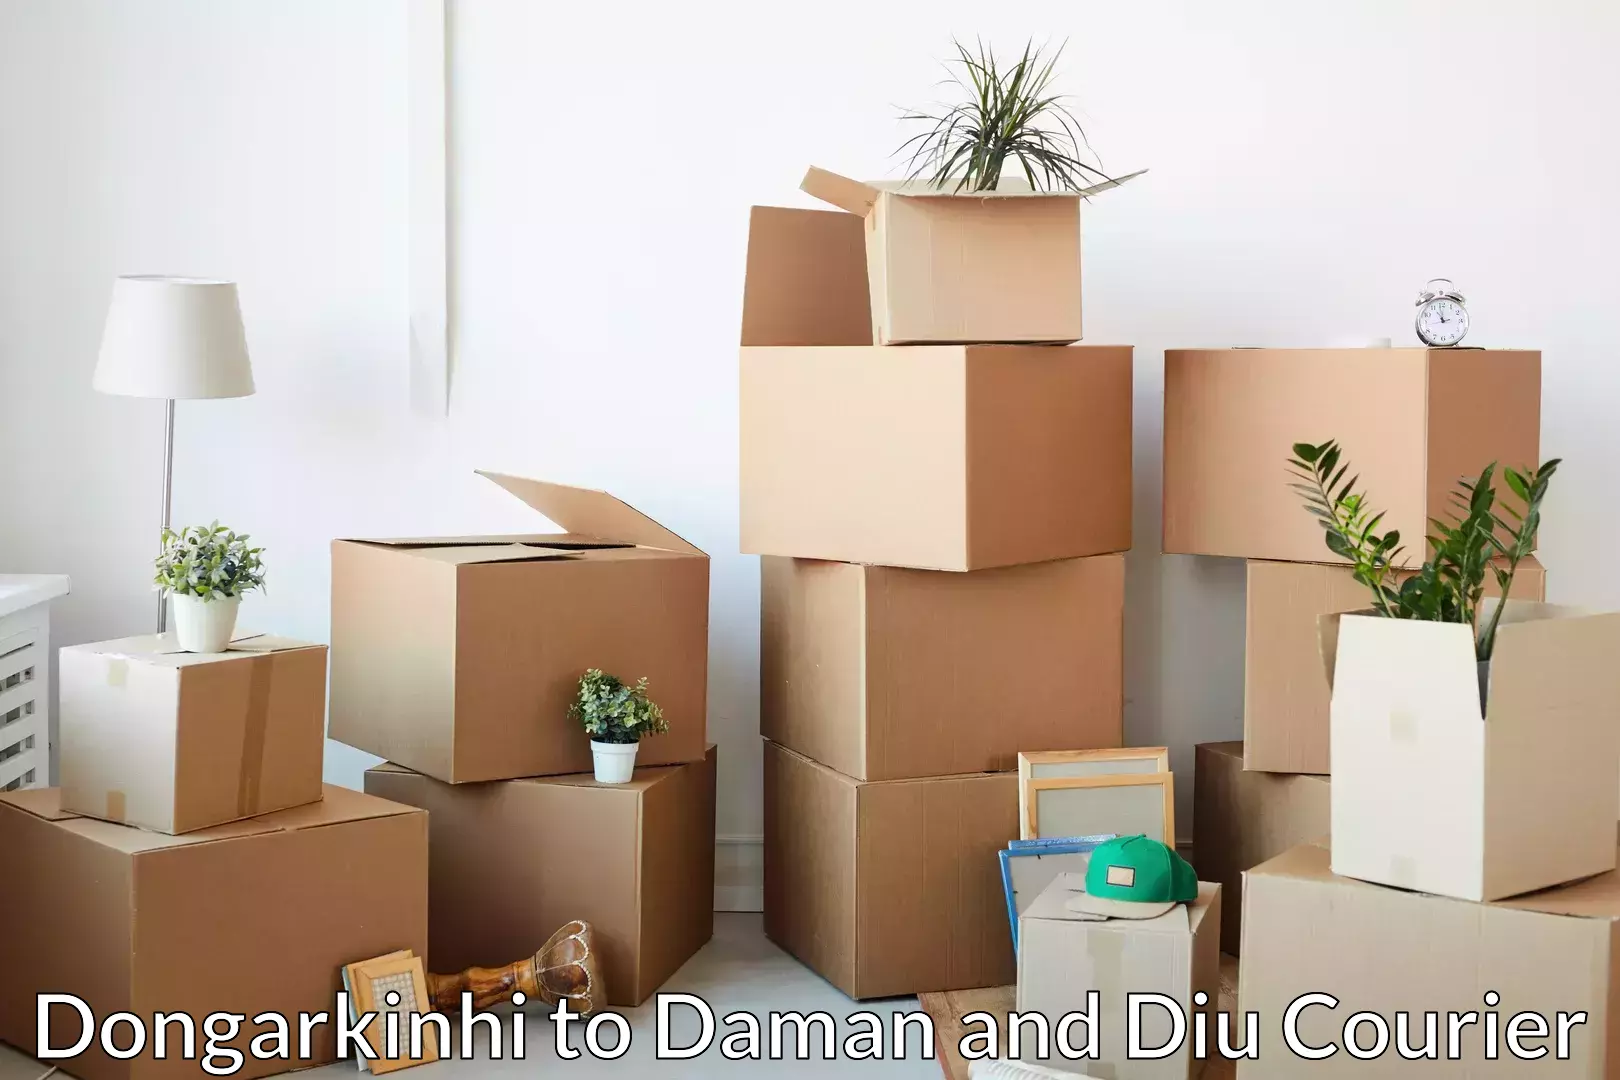 Furniture transport experts Dongarkinhi to Diu